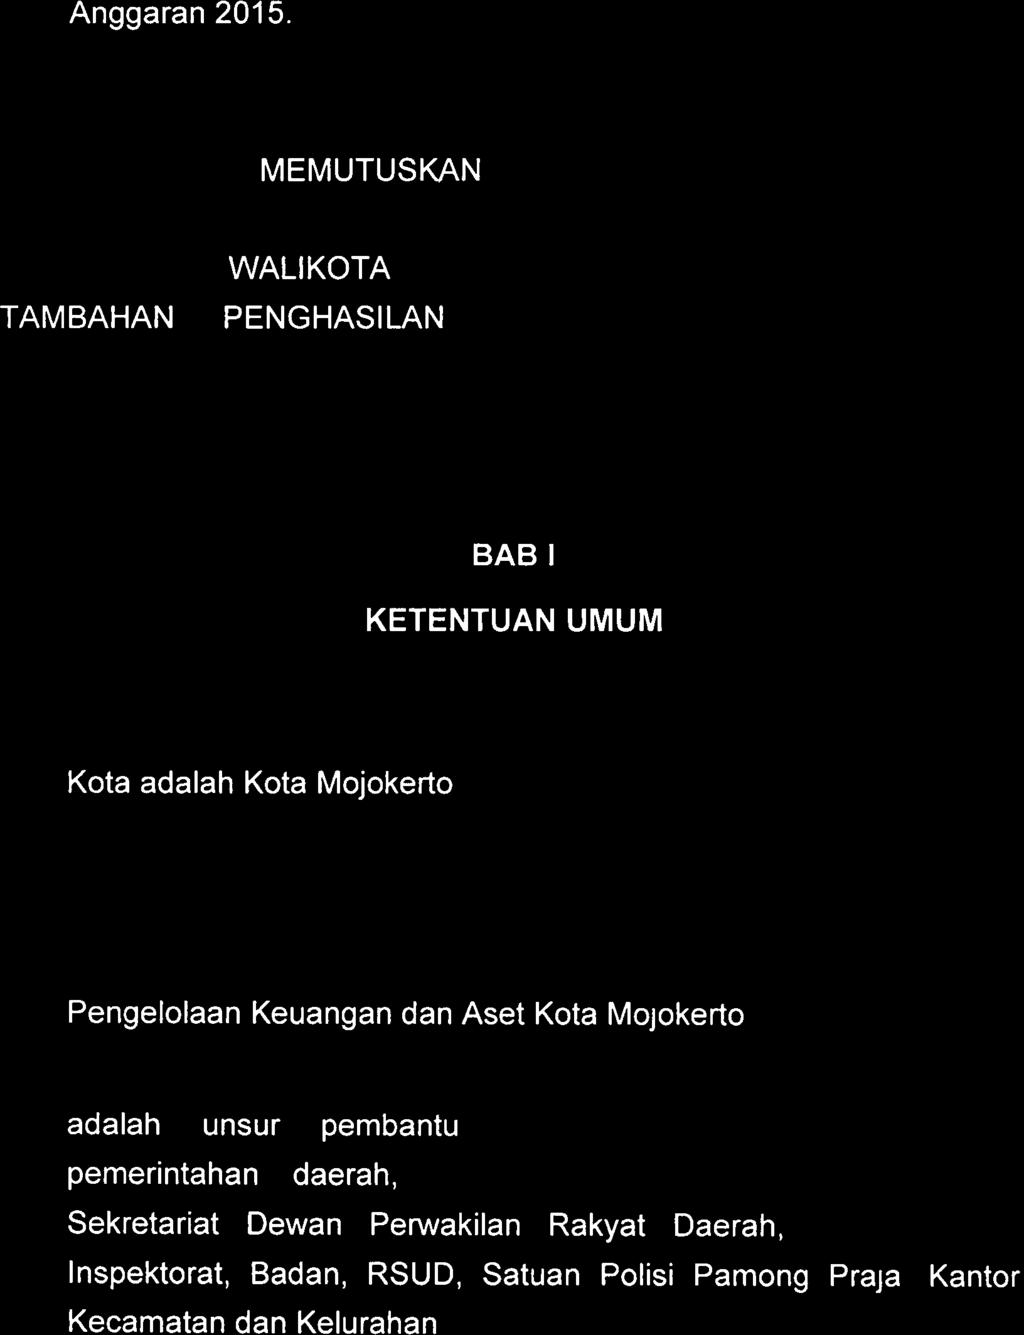 Peraturan Walikota Mojokerto Nomor 113 Tahun 2014 tentang Petunjuk Teknis Pengelolaan Keuangan Daerah Pemerintah Kota Mojokerto Tahun 2015 ; 21.